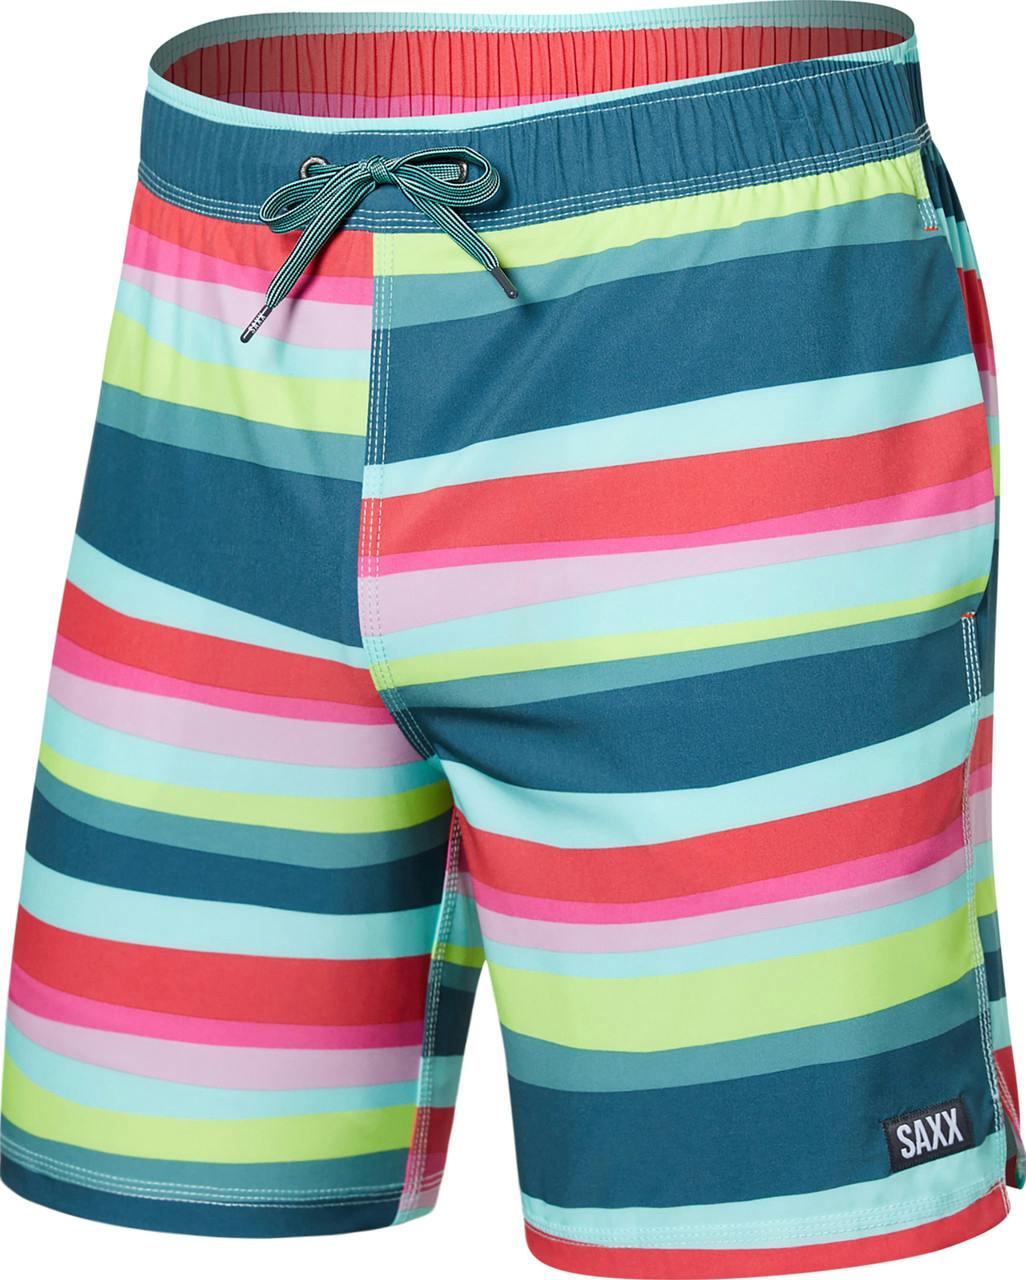 Oh Buoy 2N1 Volley Shorts 7" Cutback Stripe/Bright Mul